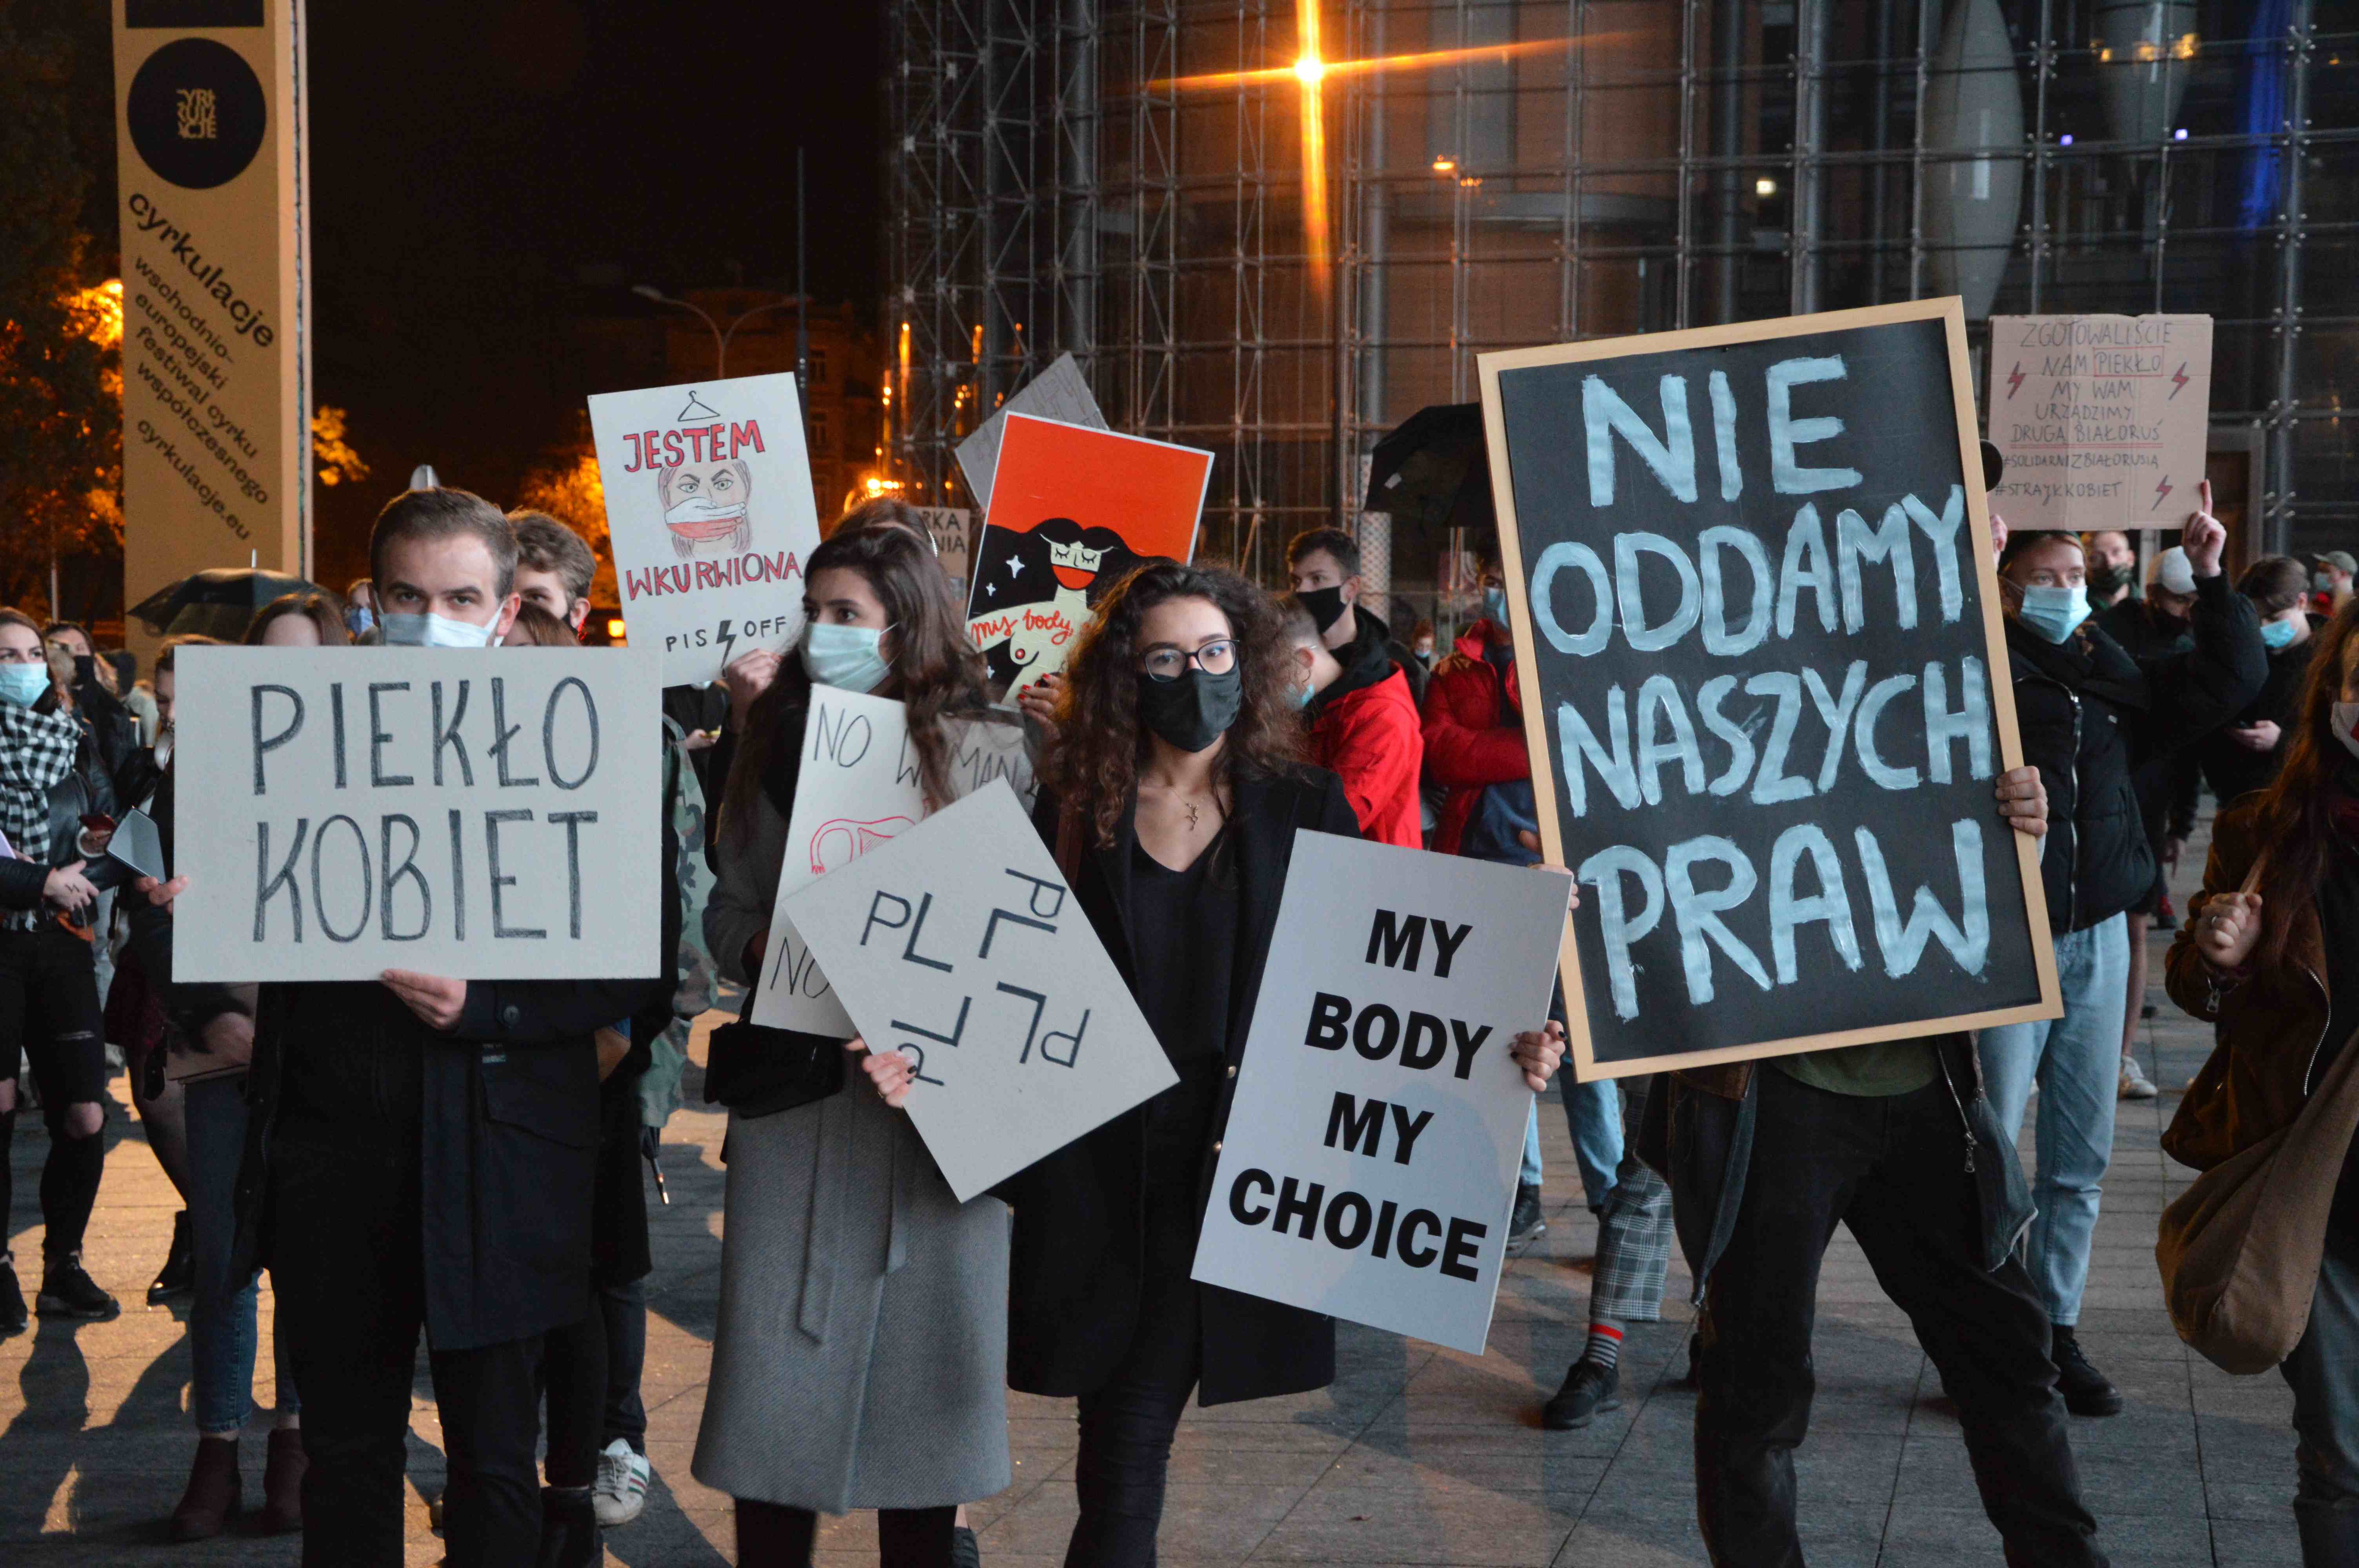 "Strajk Kobiet", "***** ***" i "Moje ciało, mój wybór". Przez Lublin przeszedł kolejny protest przeciwników decyzji Trybunału [GALERIA] - Zdjęcie główne